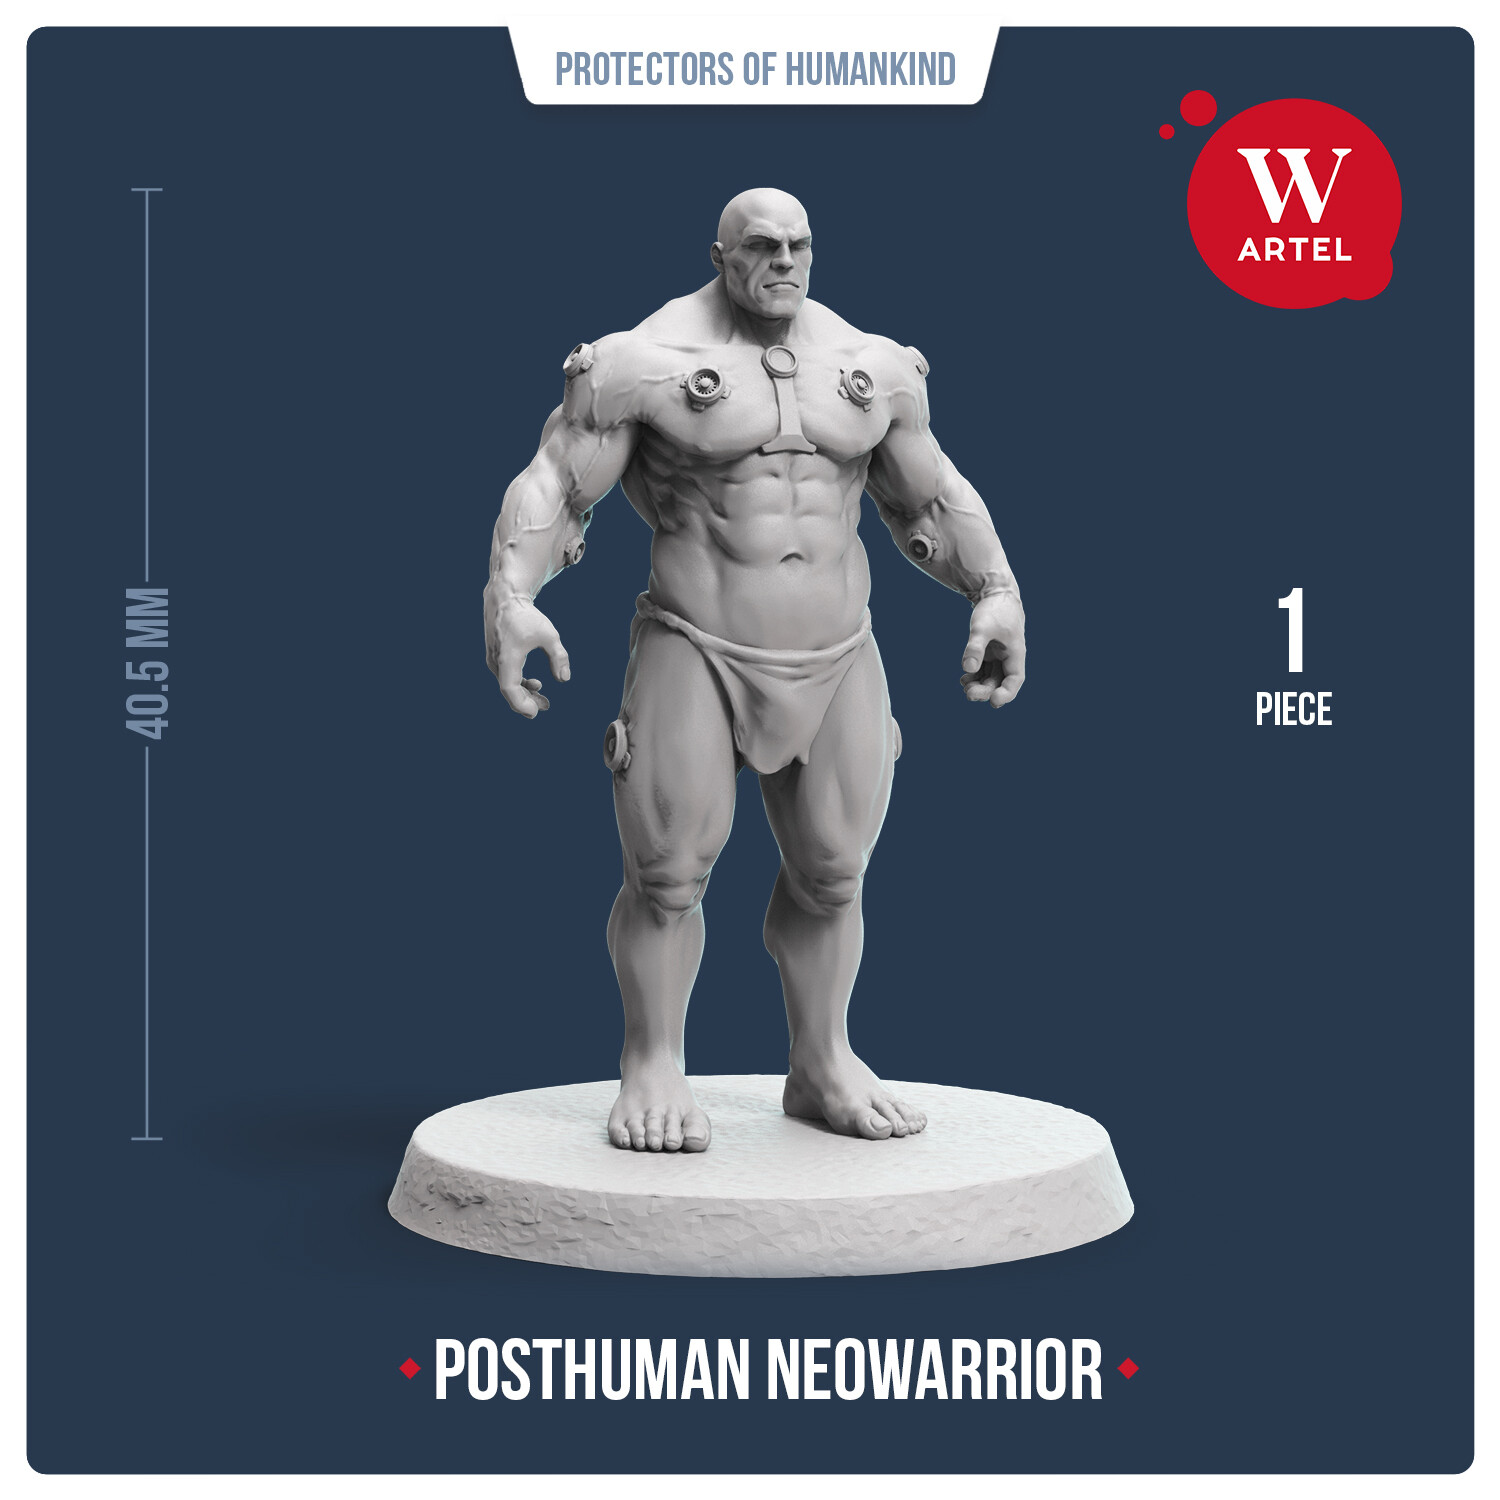 Posthuman Neowarrior